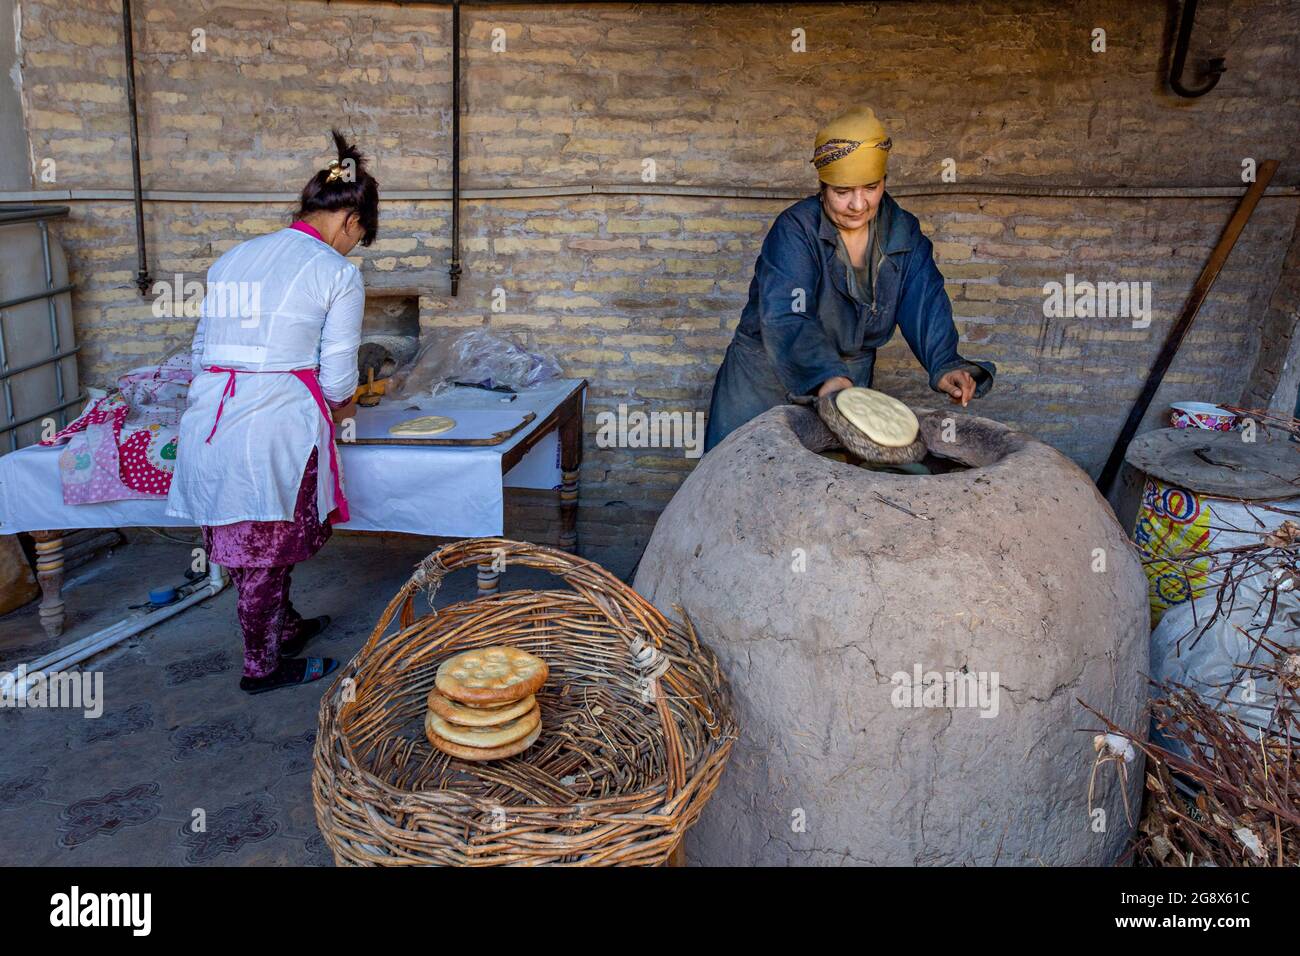 Uzbek women making tandoori bread in Khiva, Uzbekistan. Stock Photo